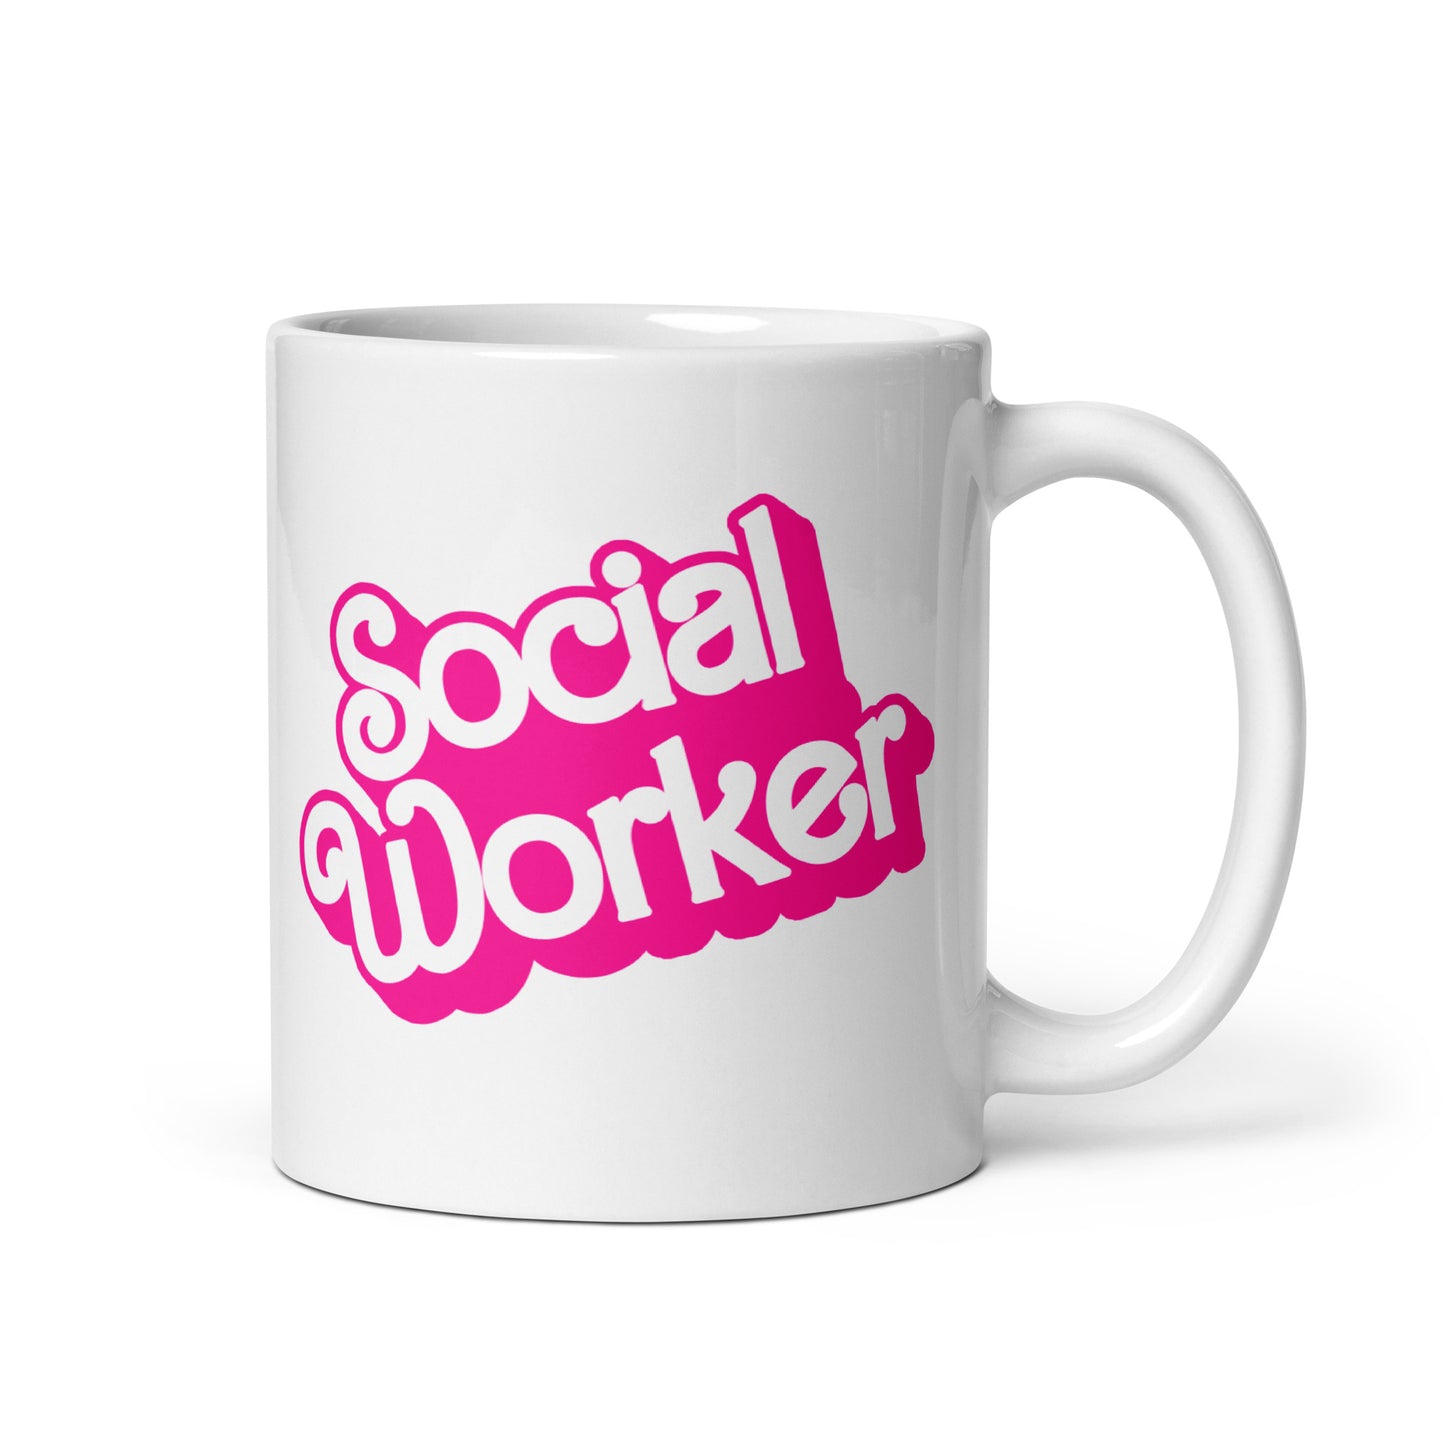 Barbie Social Worker Mug